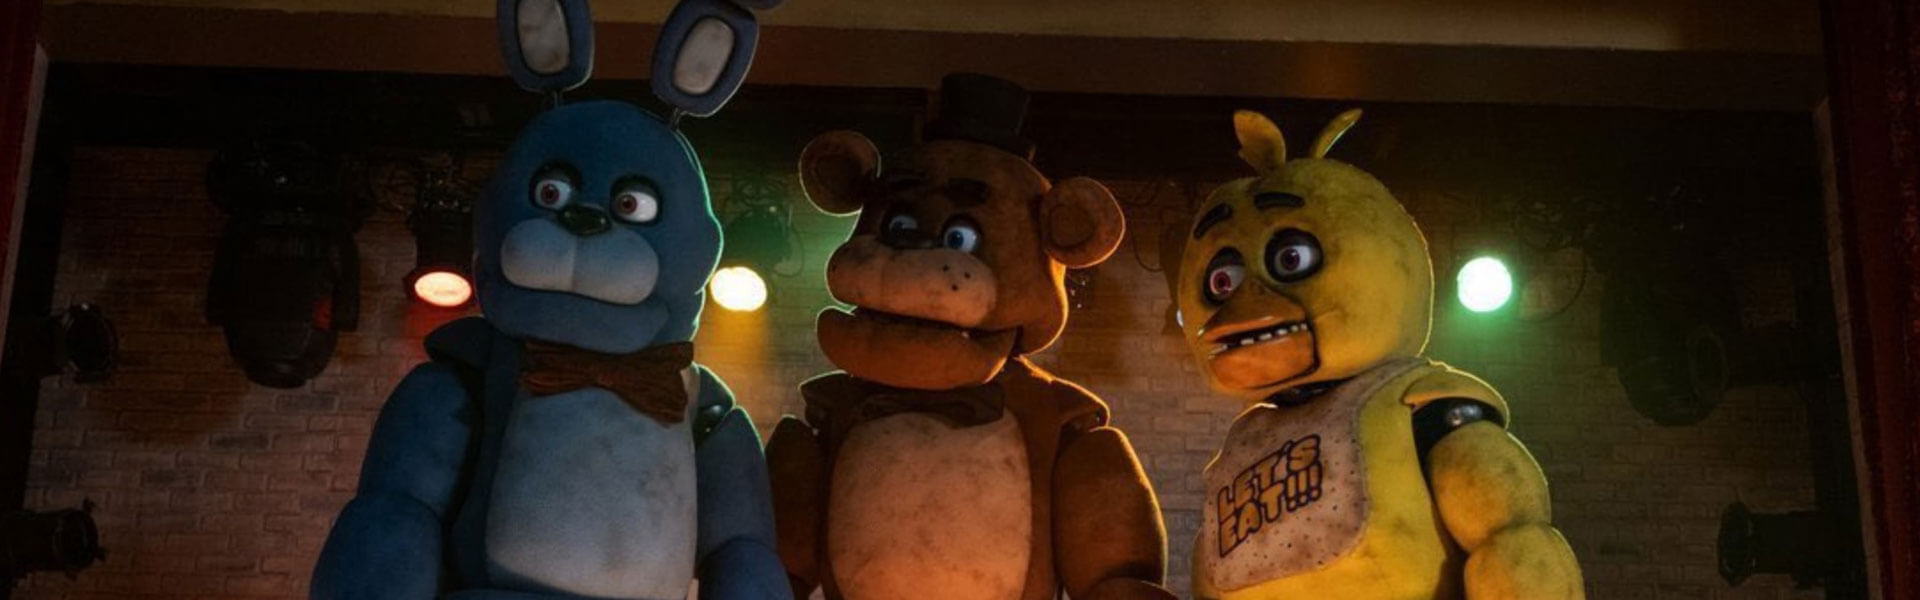 Crítica de ‘Five Nights at Freddy’s’: la necedad de adaptar videojuegos al cine